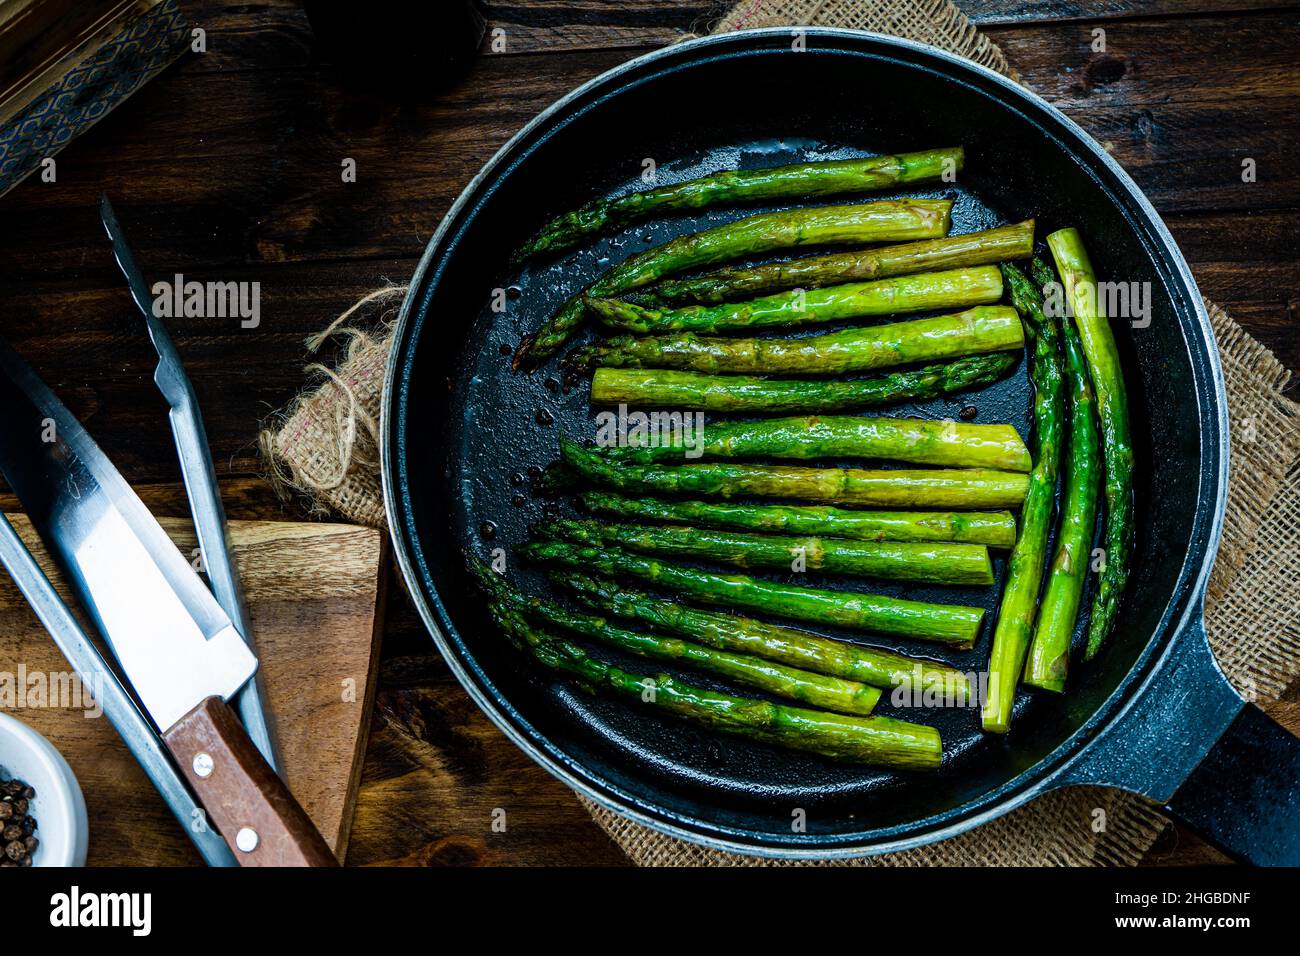 Délicieux préparation d'asperges vertes cuites au beurre dans une casserole sur un comptoir en bois. Banque D'Images